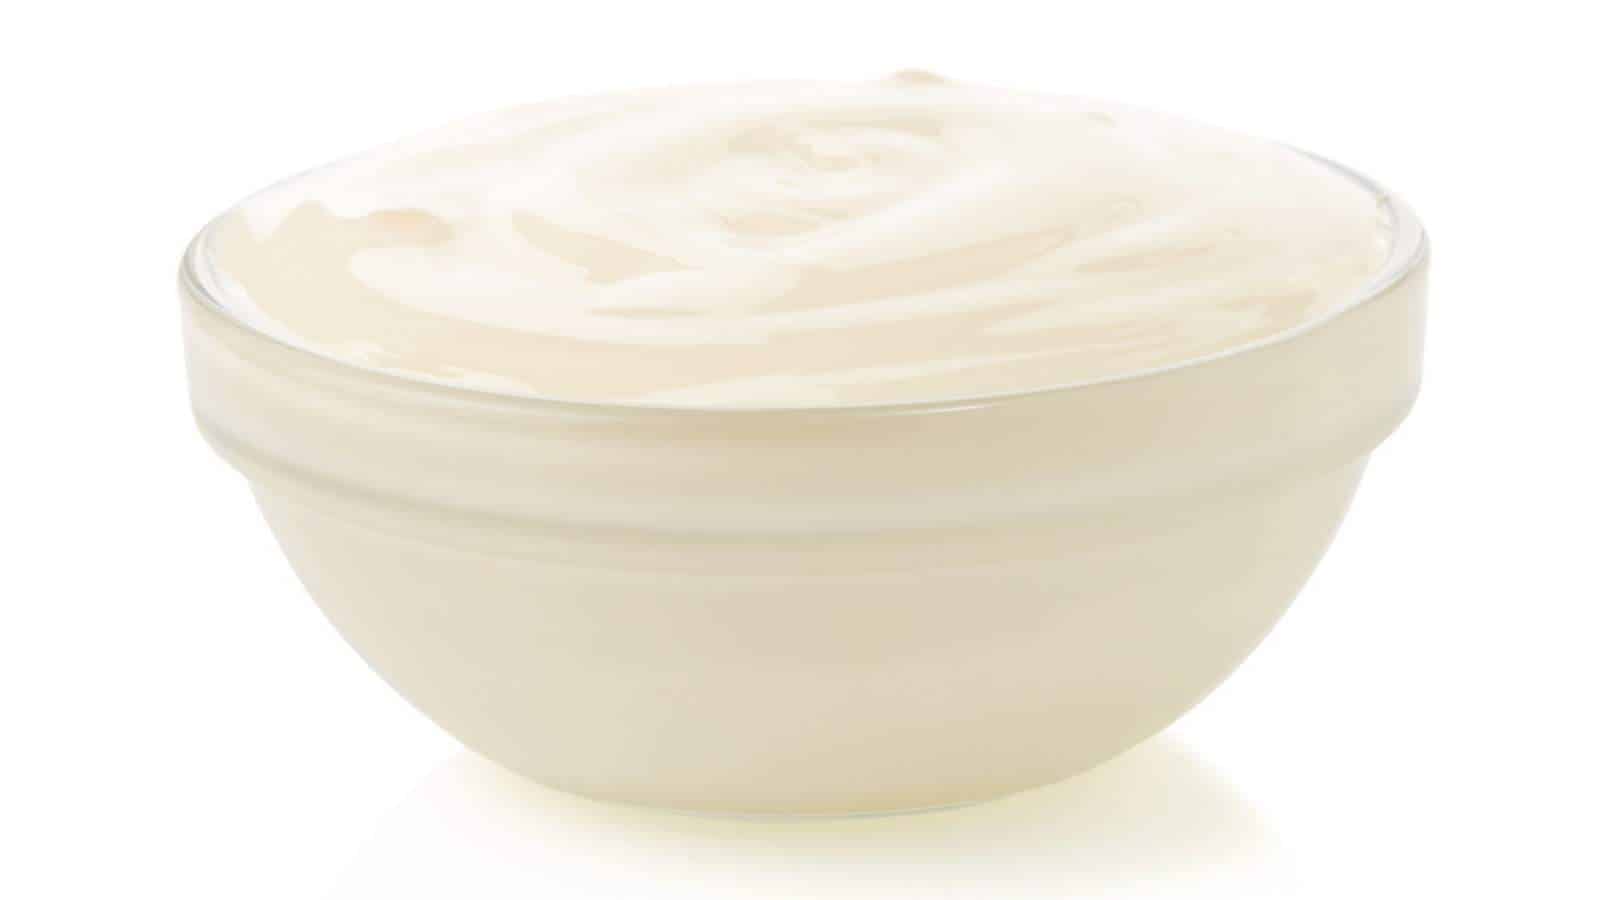 Large bowl of mayonnaise.
